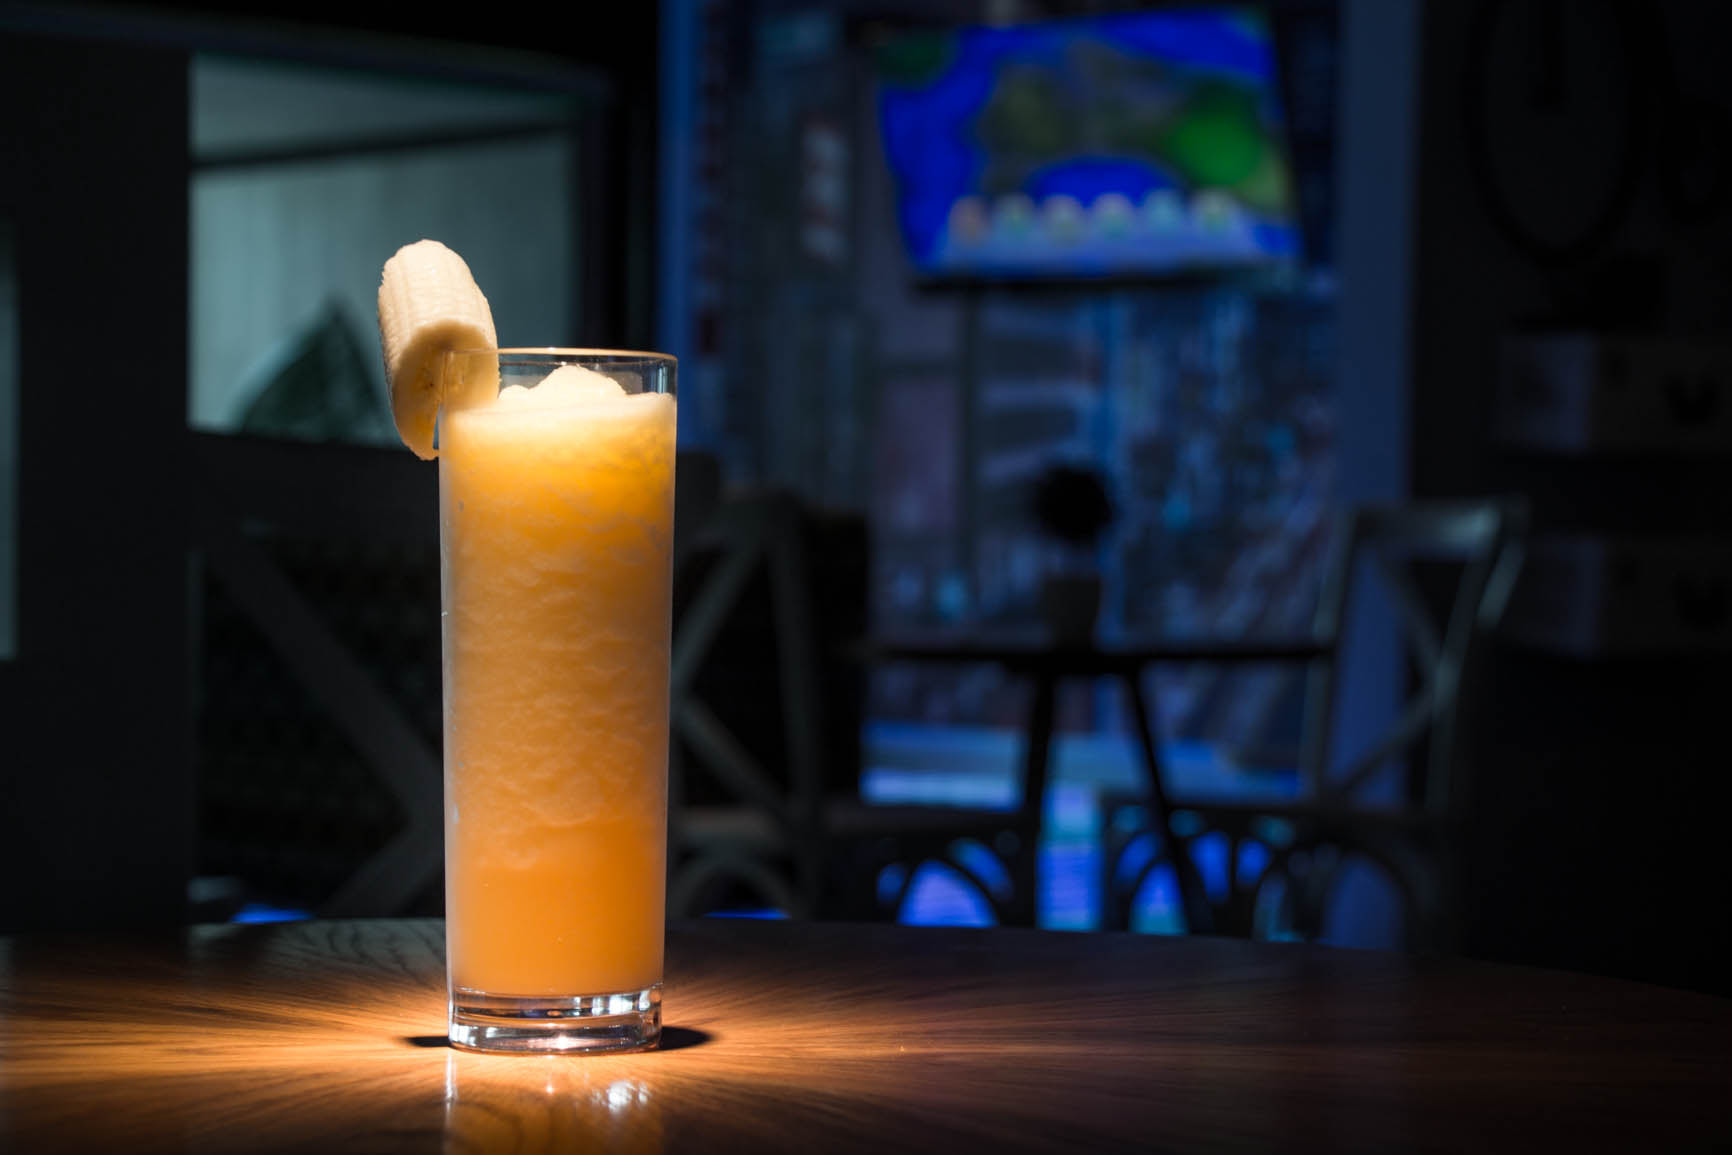 New Drink Menu for Teens at Mexico's Grand Velas Riviera Nayarit